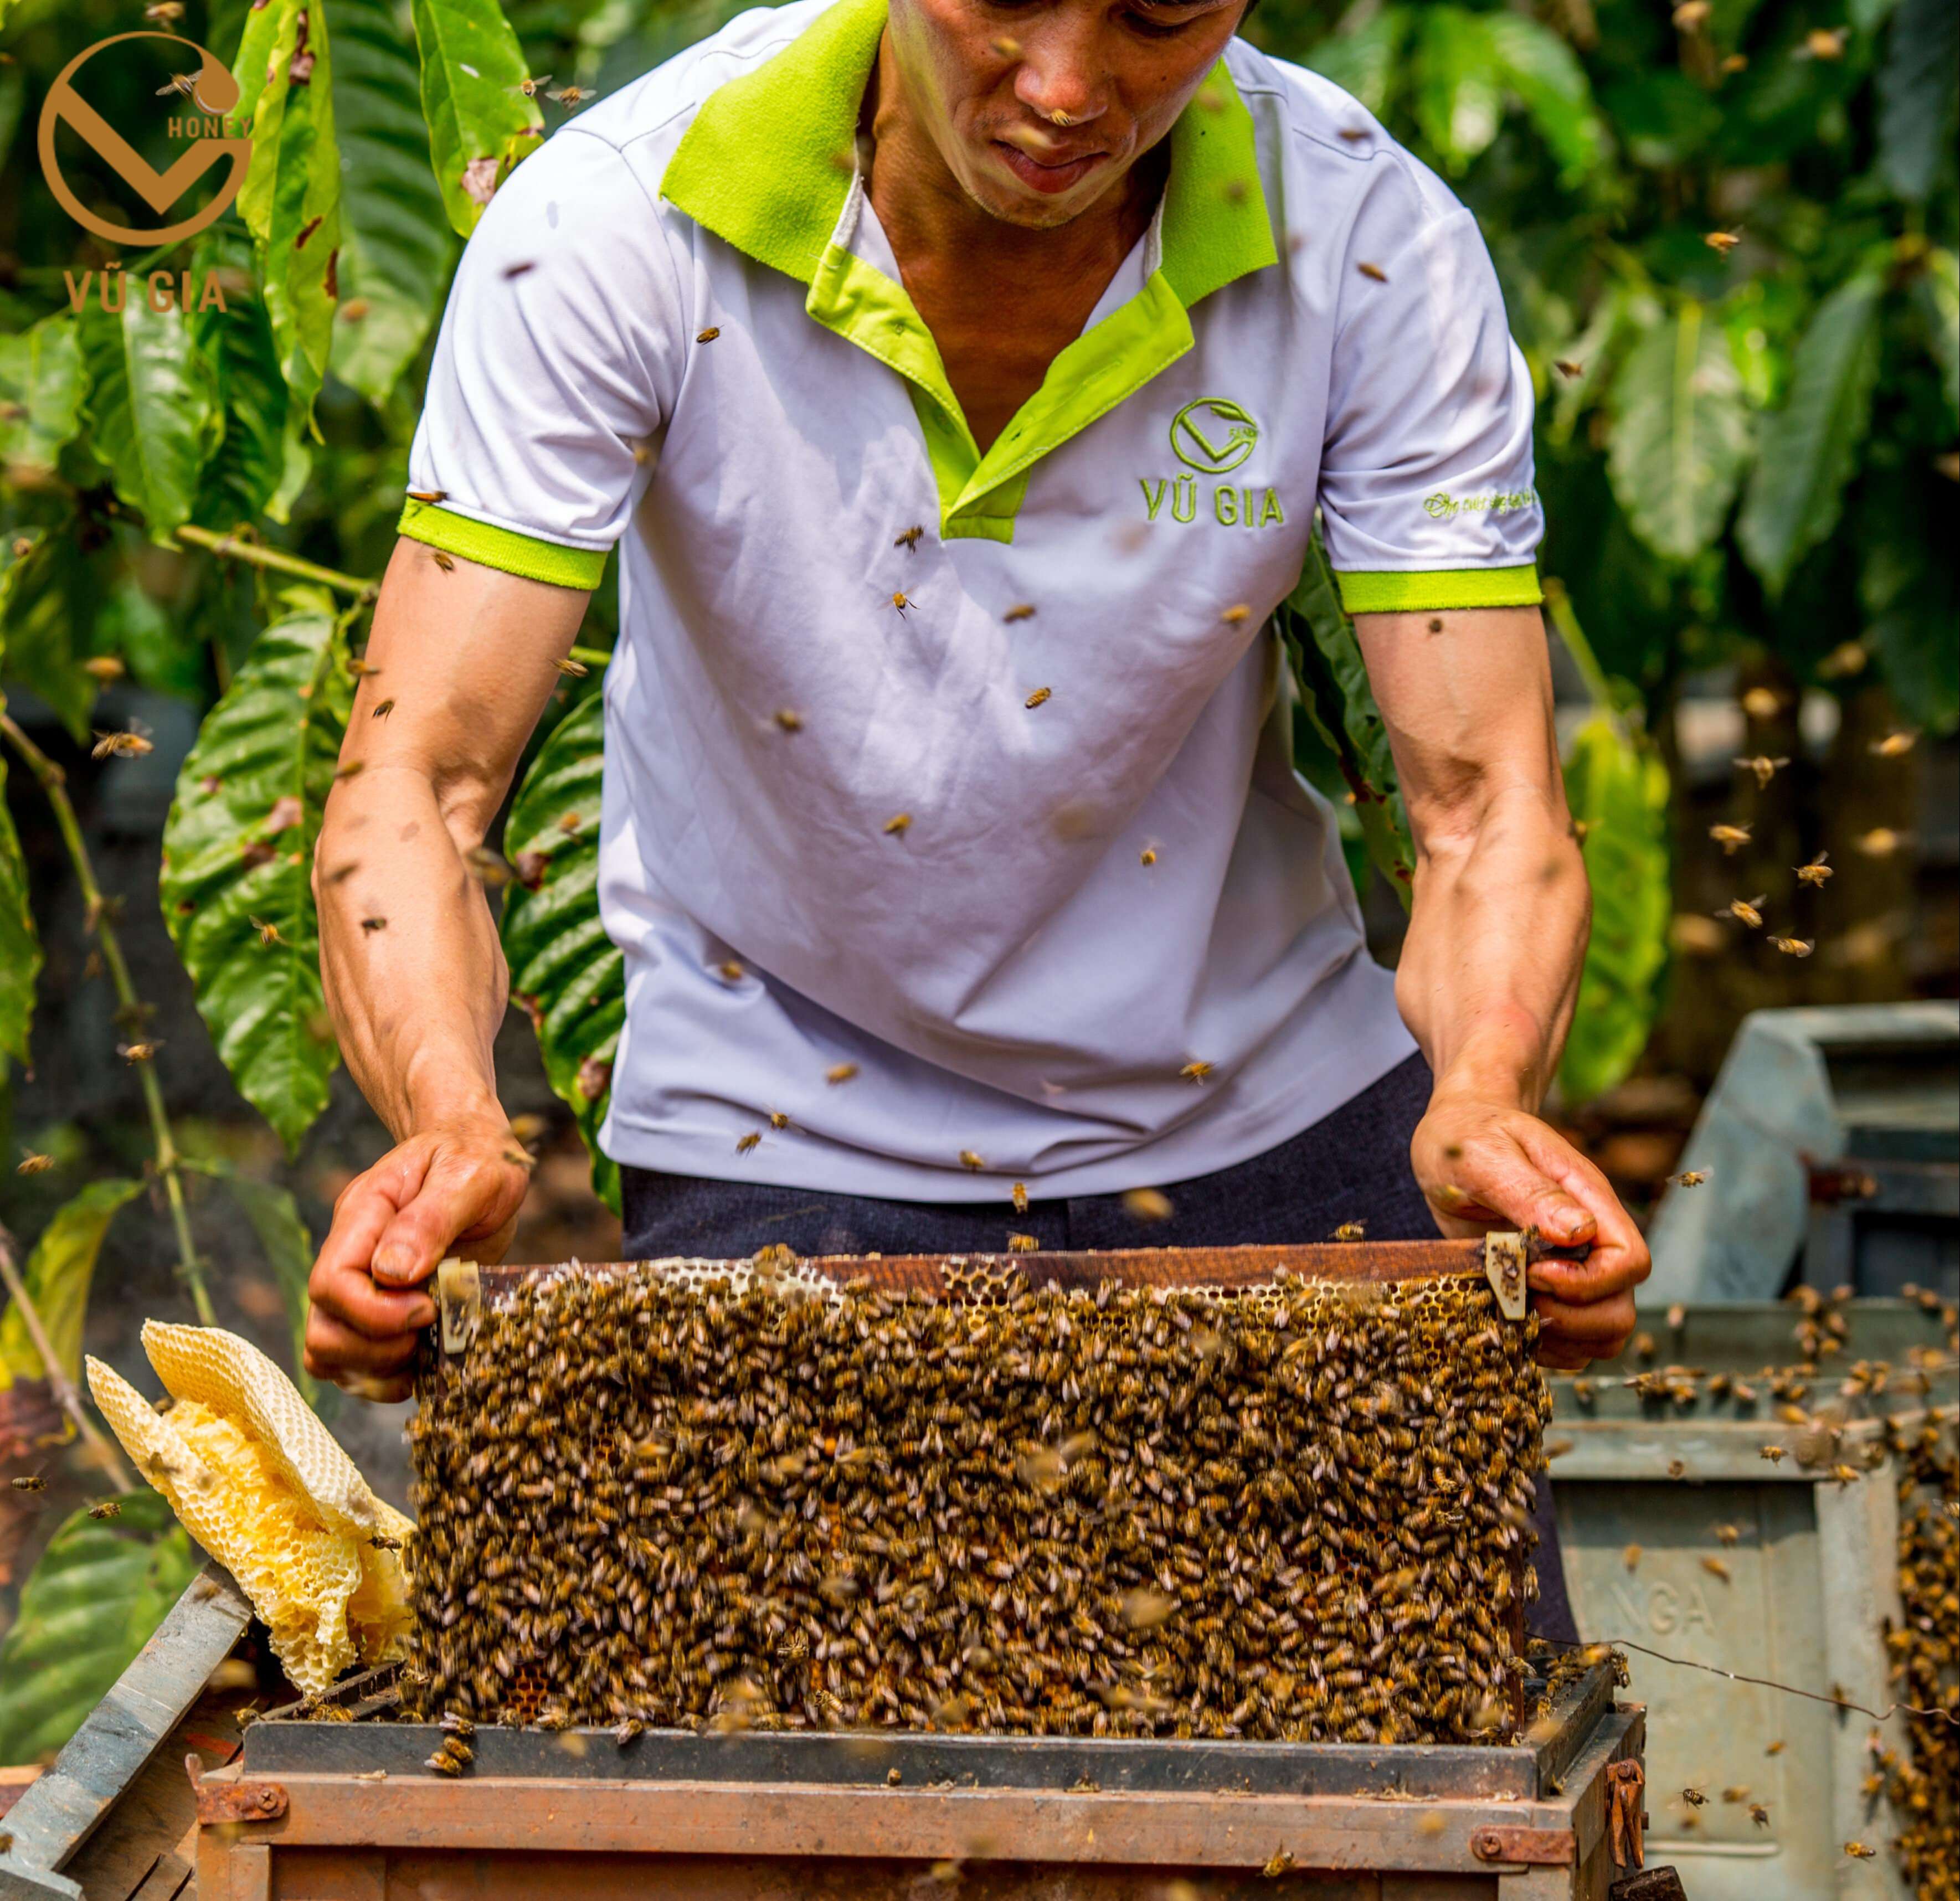 Mật Ong Hoa Nhãn Nguyên Chất VG Honey (200ml/hũ) - Tăng cường cải thiện sức đề kháng, hỗ trợ dạ dày tiêu hóa hiệu quả